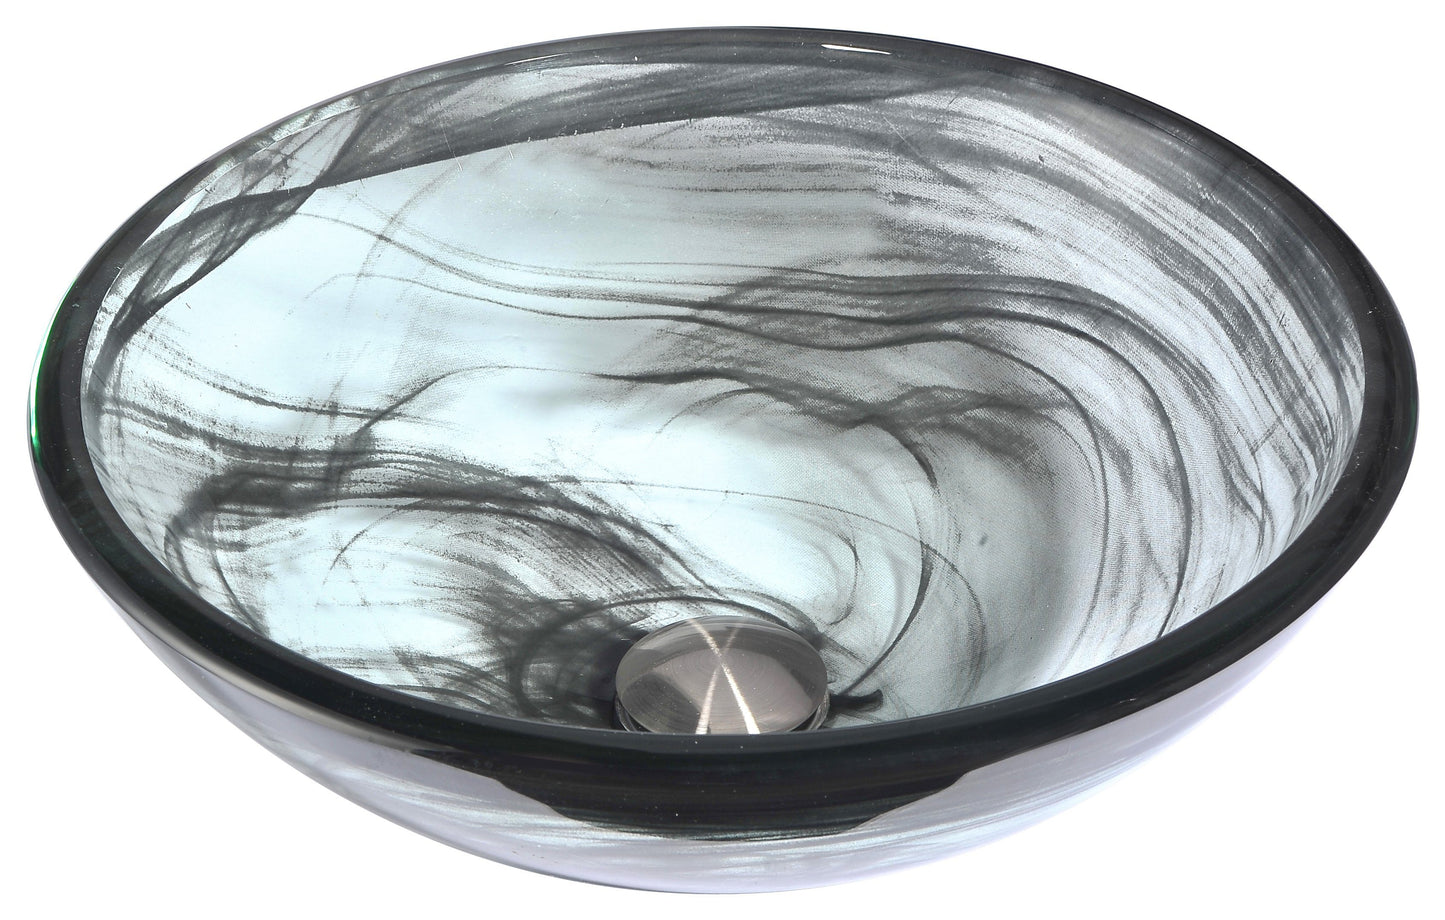 Mezzo Series Deco-Glass Vessel Sink in Slumber Wisp with Fann Faucet in Chrome - Luxe Bathroom Vanities